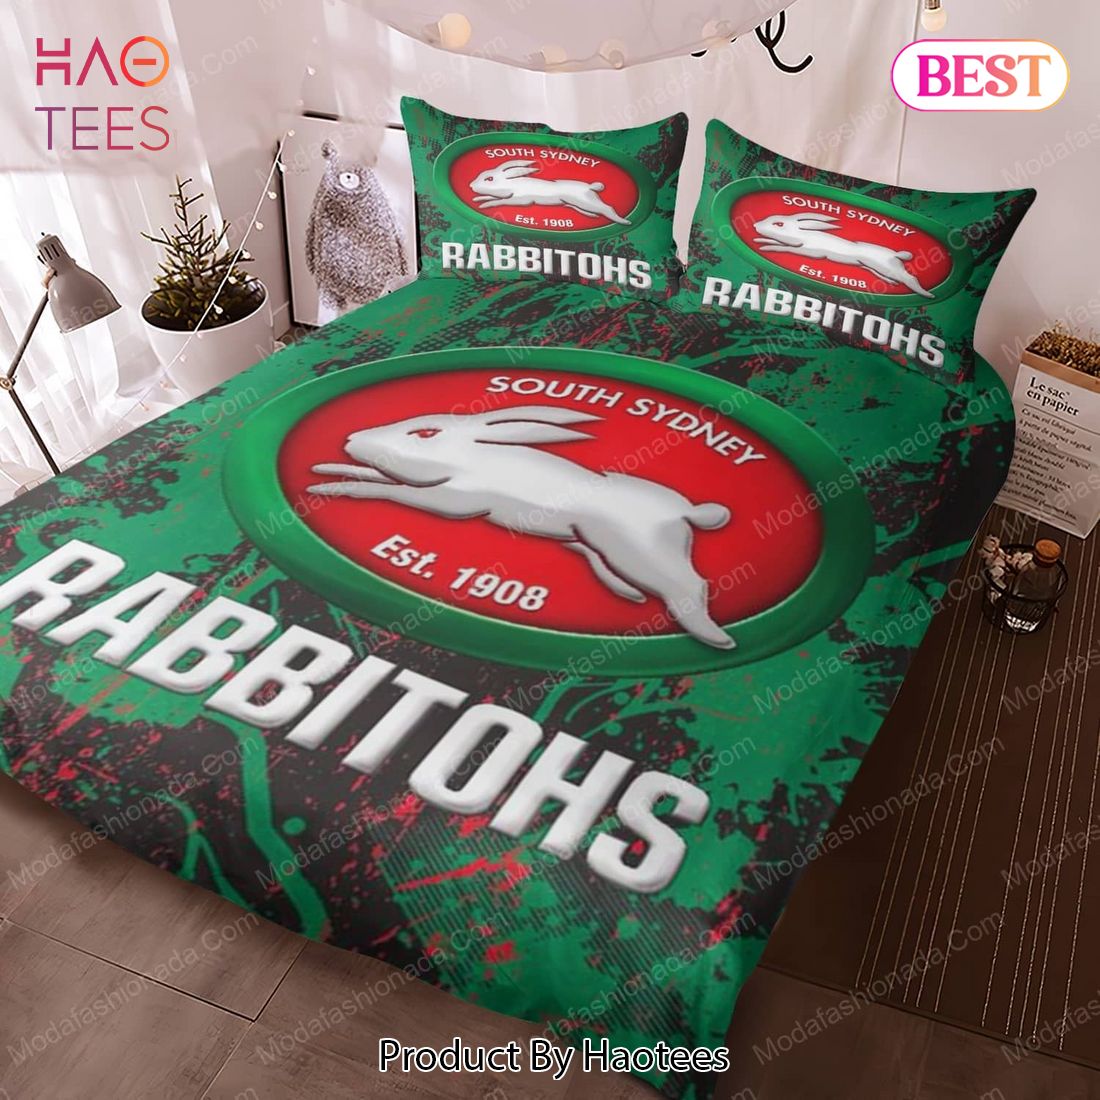 Buy South Sydney Rabbitohs Bedding Sets Bed Sets, Bedroom Sets, Comforter Sets, Duvet Cover, Bedspread